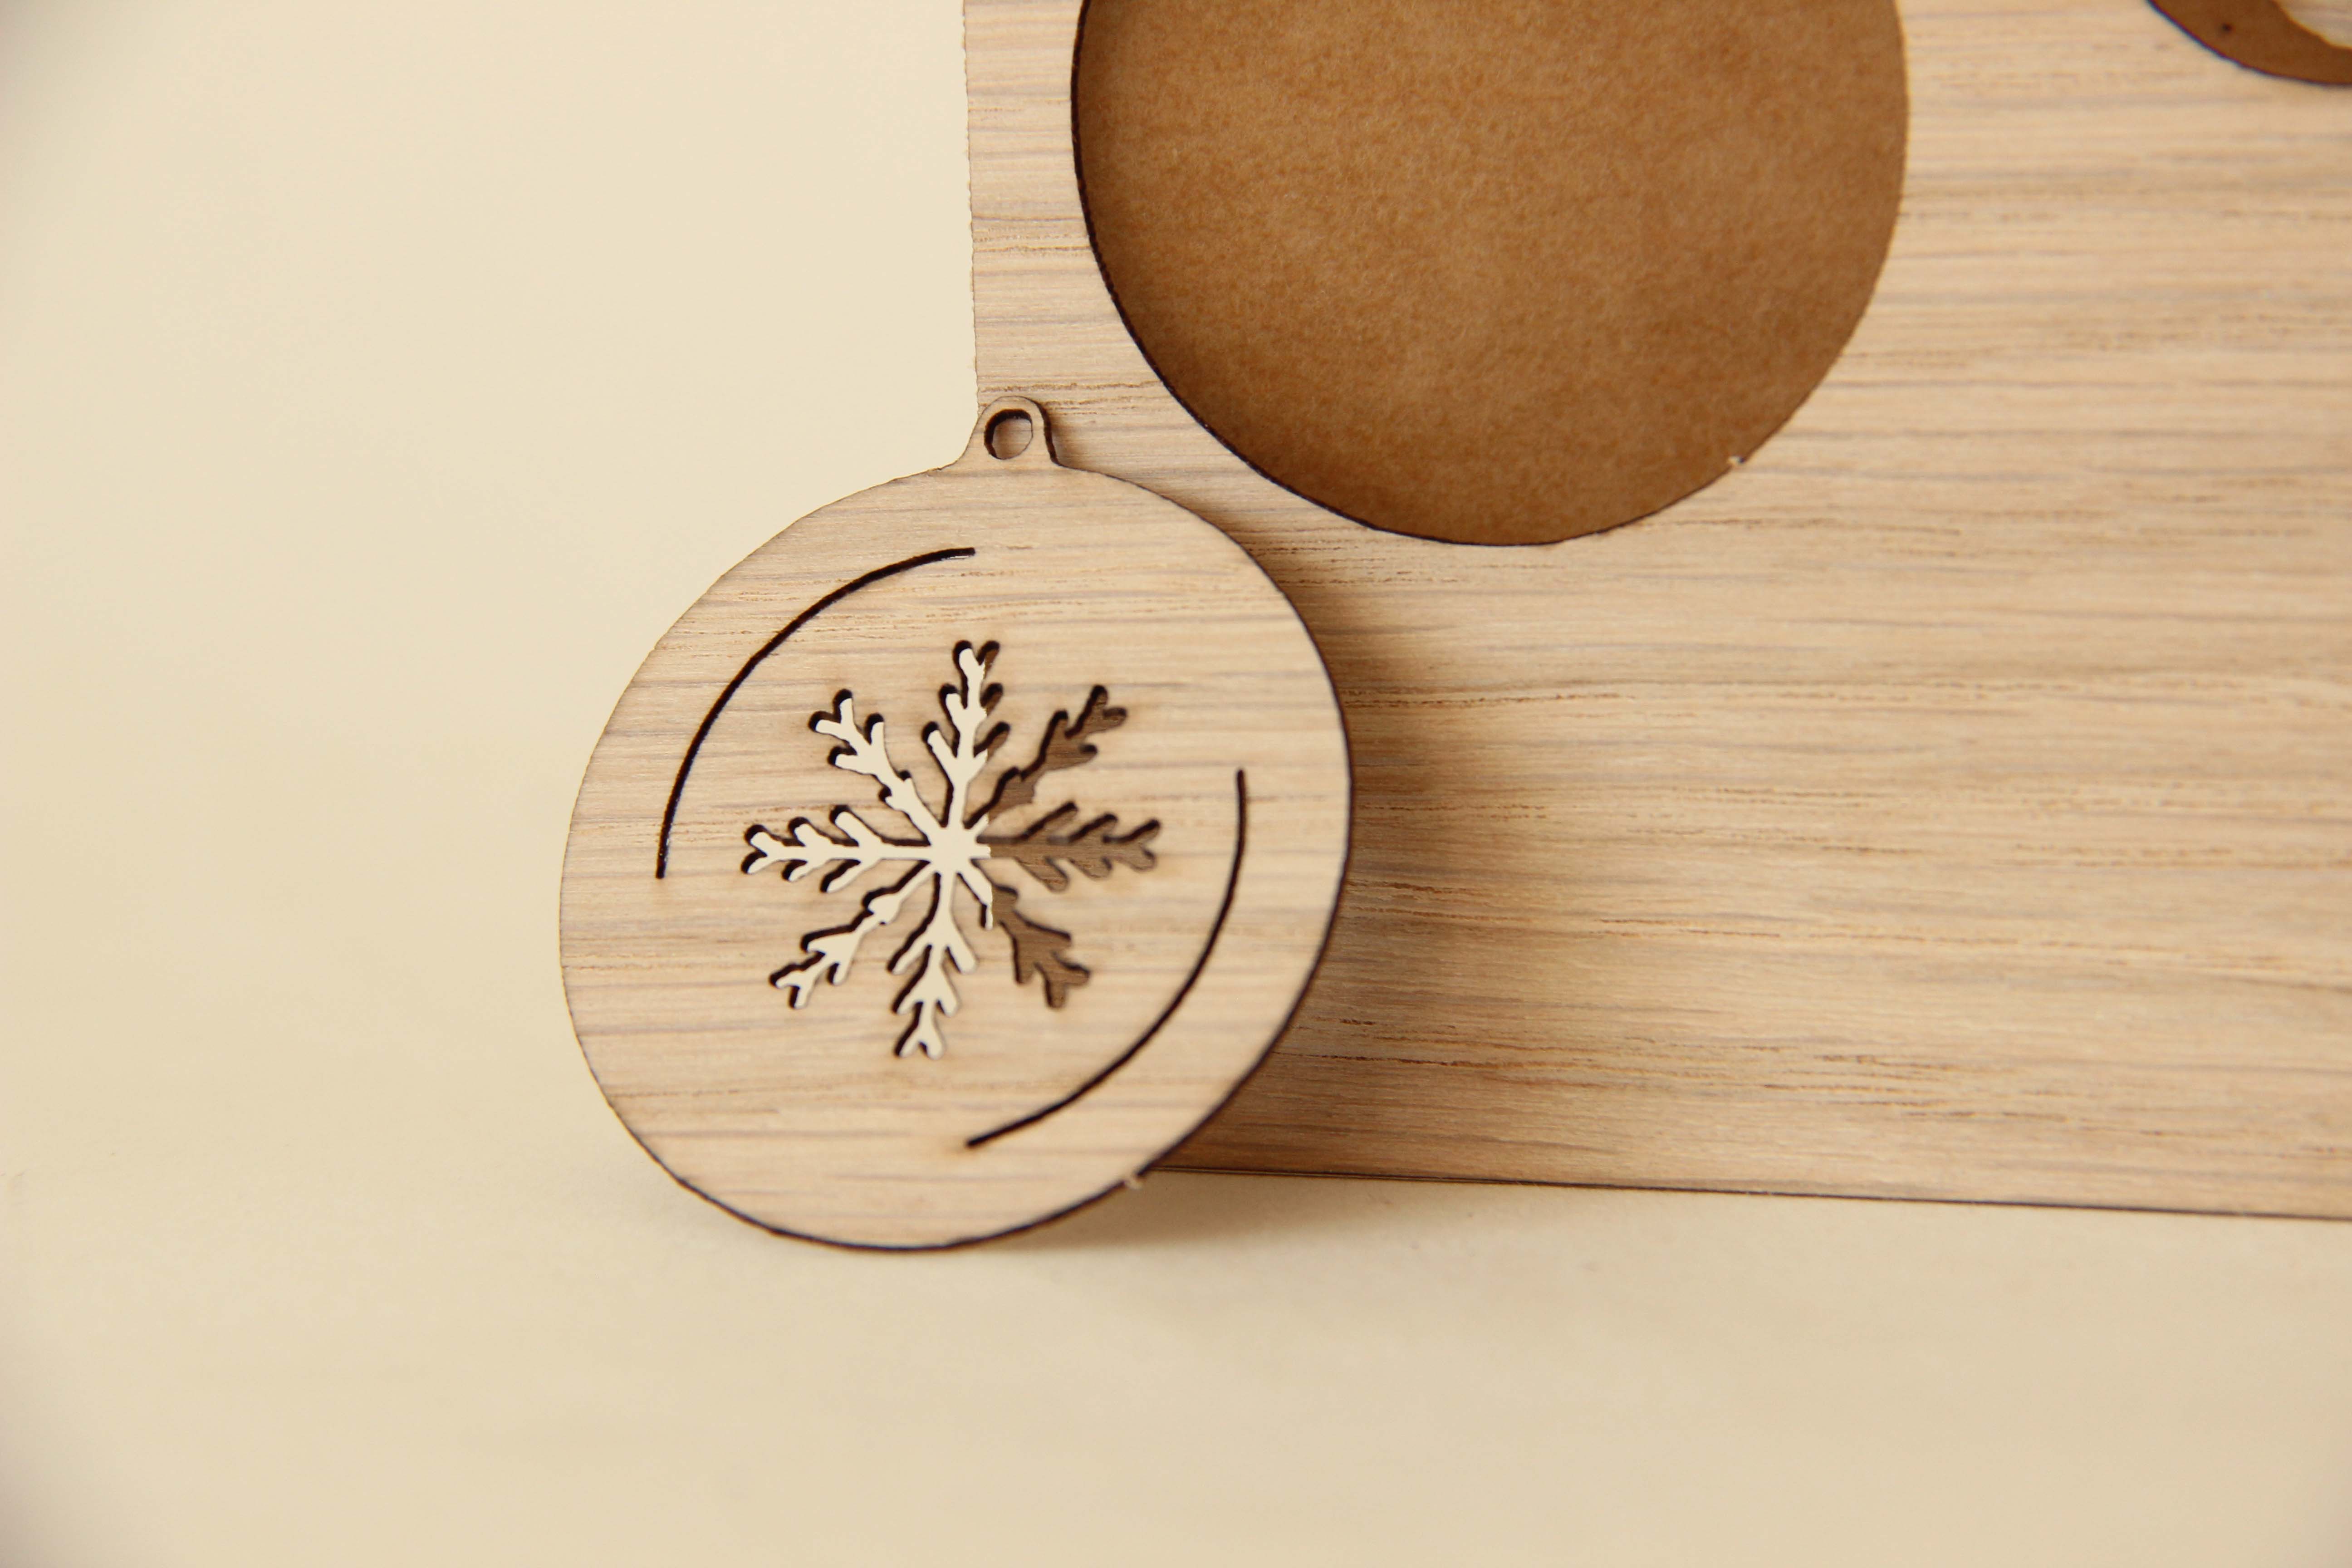 Holzgrusskarten - Weihnachtskarte "Zauberhafte Weihnachten" aus Eiche, Christbaumkugeln